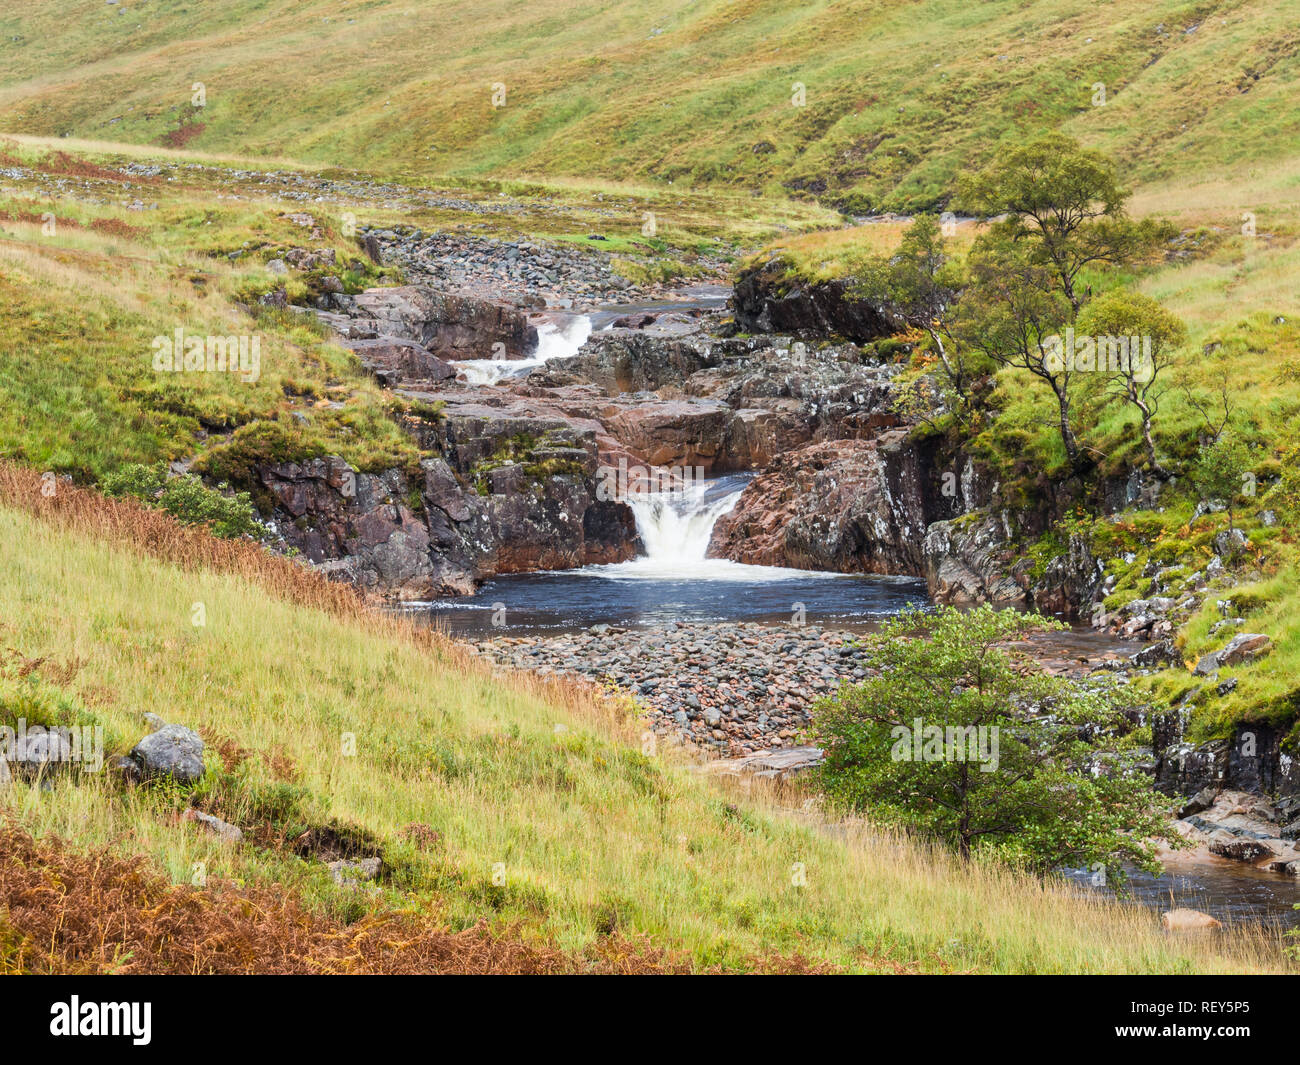 Waterfall in the River Etive in Glen Etive in the Glen Coe region, Scotland Stock Photo